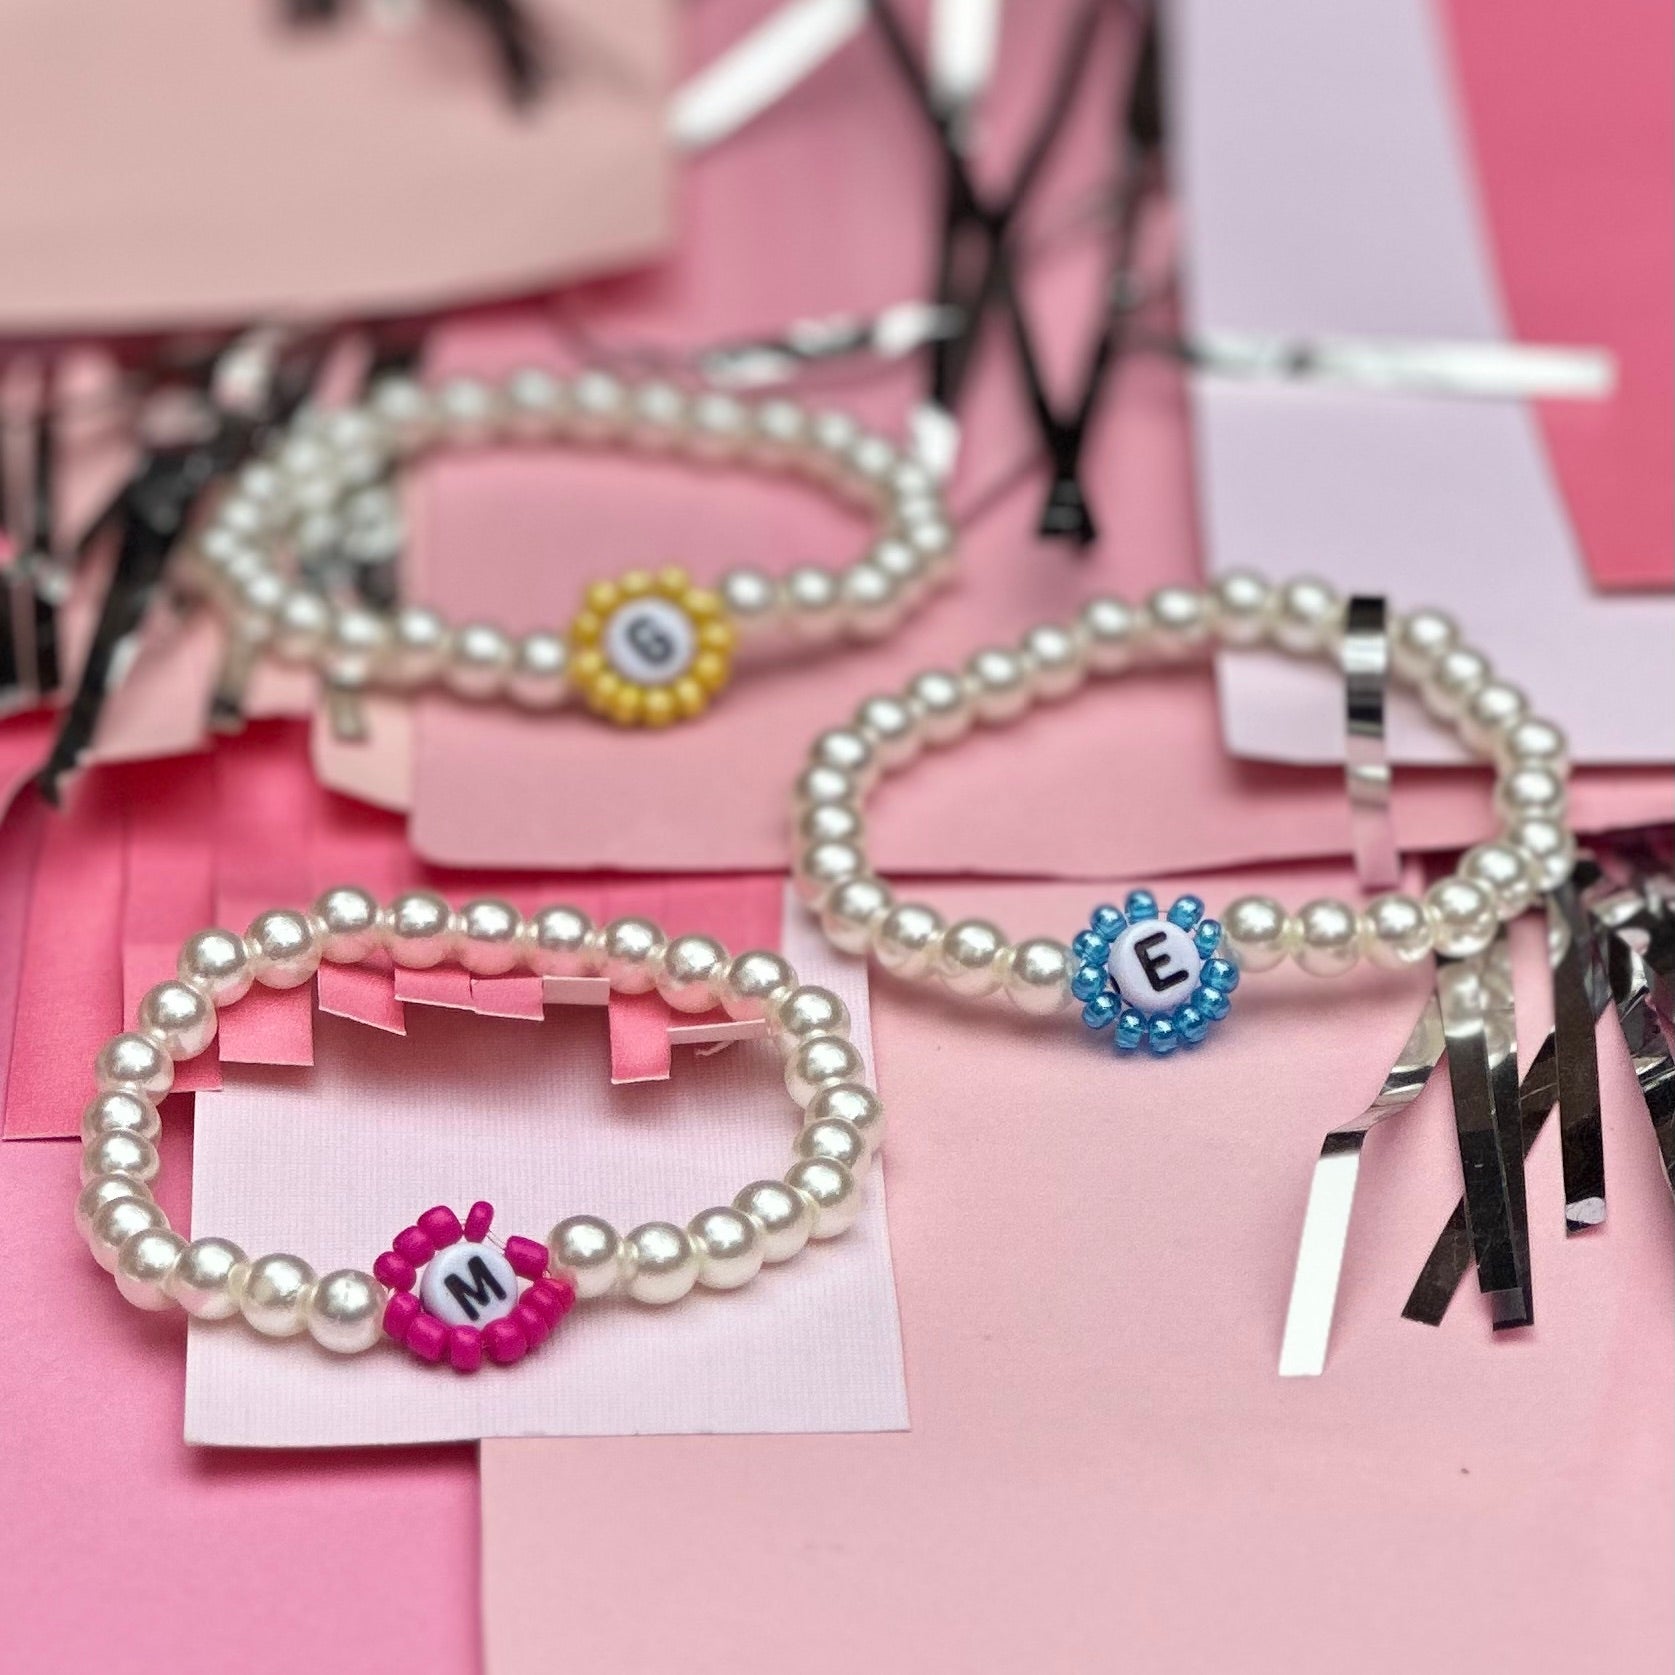 Stretch letter bracelets - alphabet beads. Make custom bracelets! 